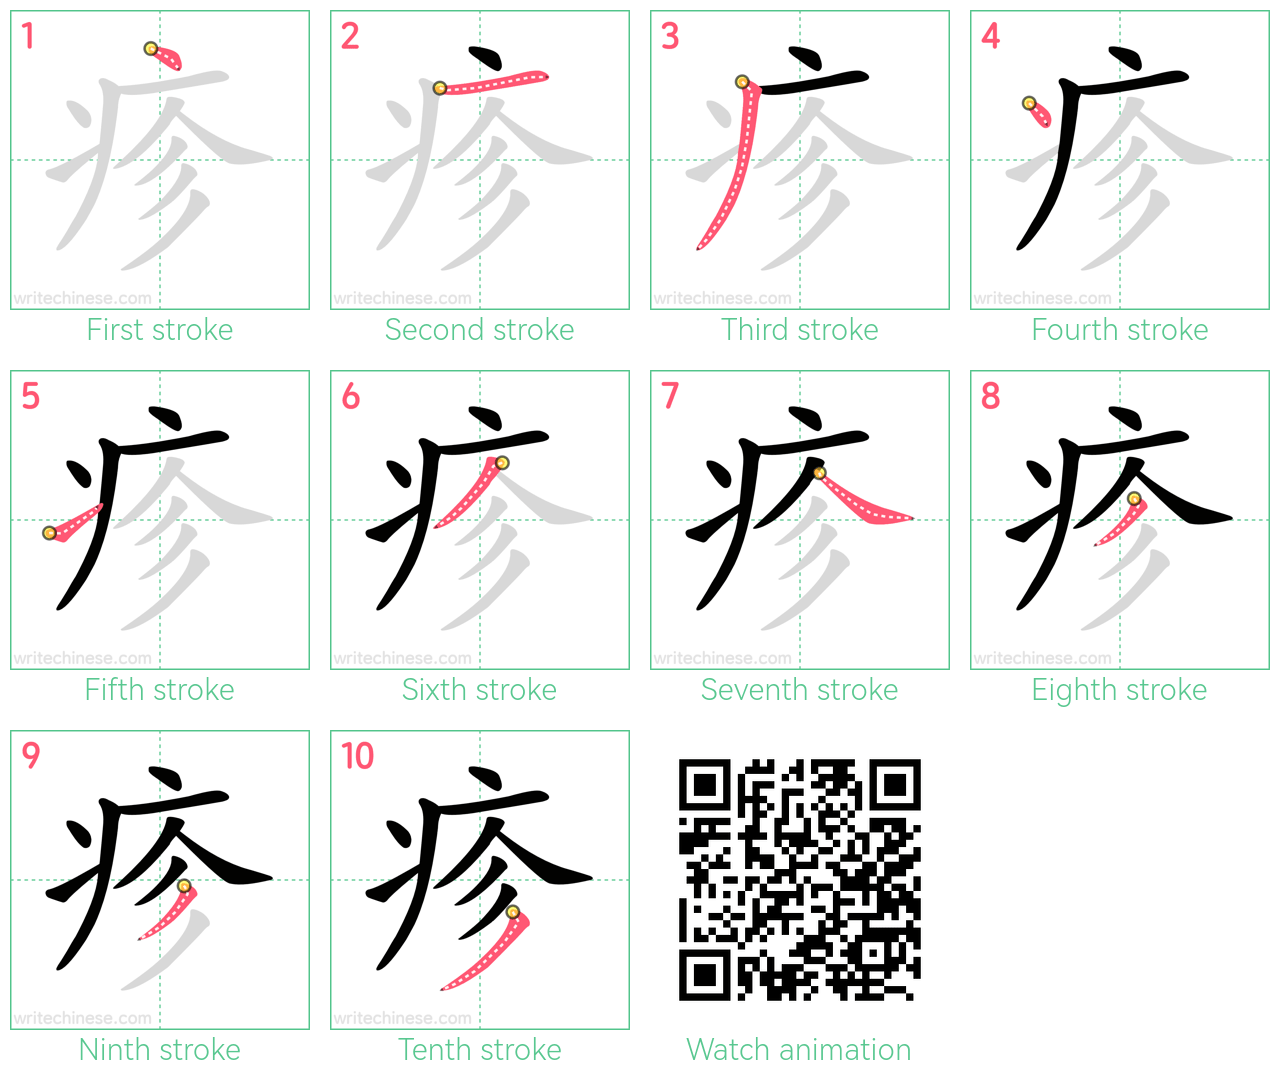 疹 step-by-step stroke order diagrams